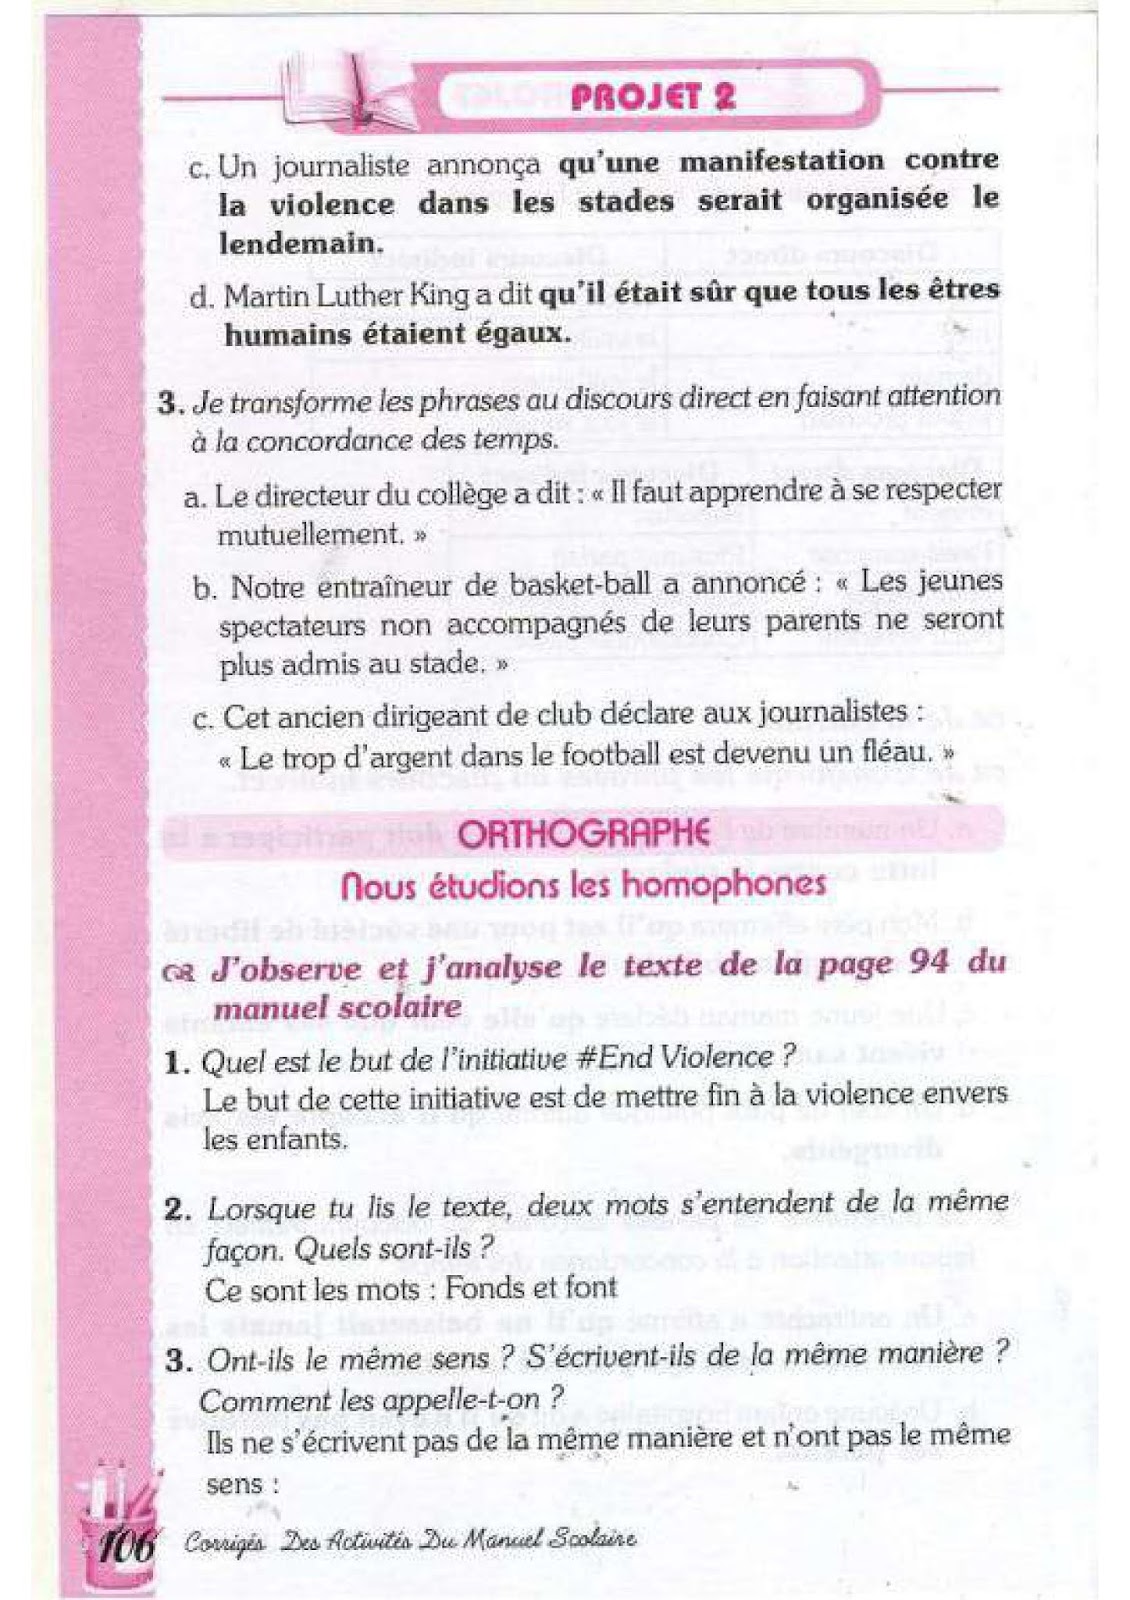 حل تمارين صفحة 94 الفرنسية للسنة الرابعة متوسط - الجيل الثاني